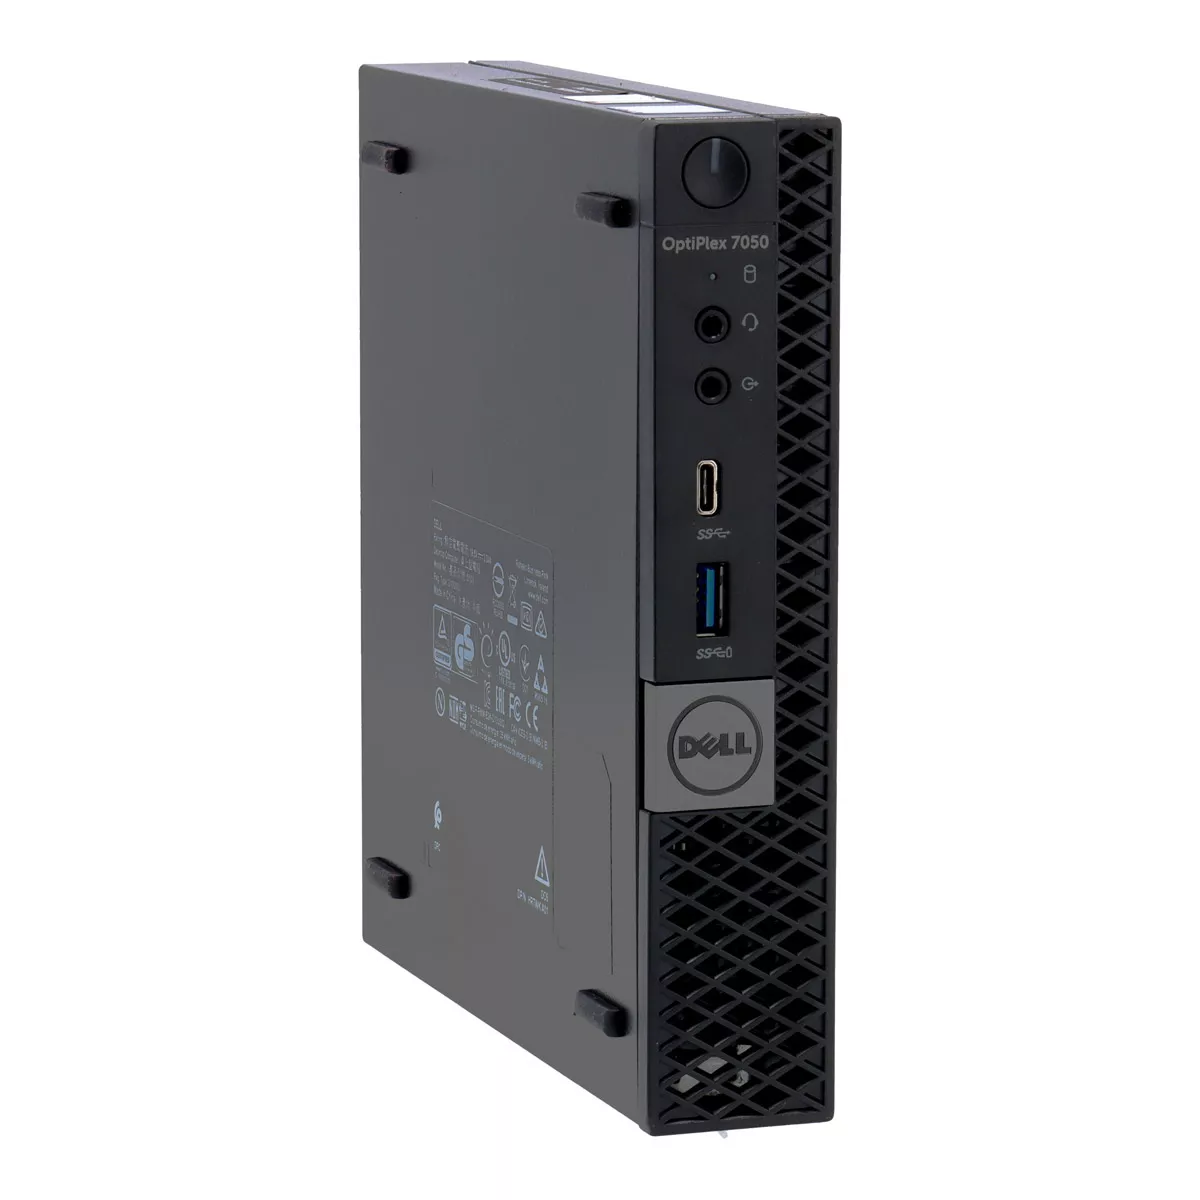 Dell Optiplex 7050 Micro Core i7 6700 3,4 GHz 240 GB nVME A+